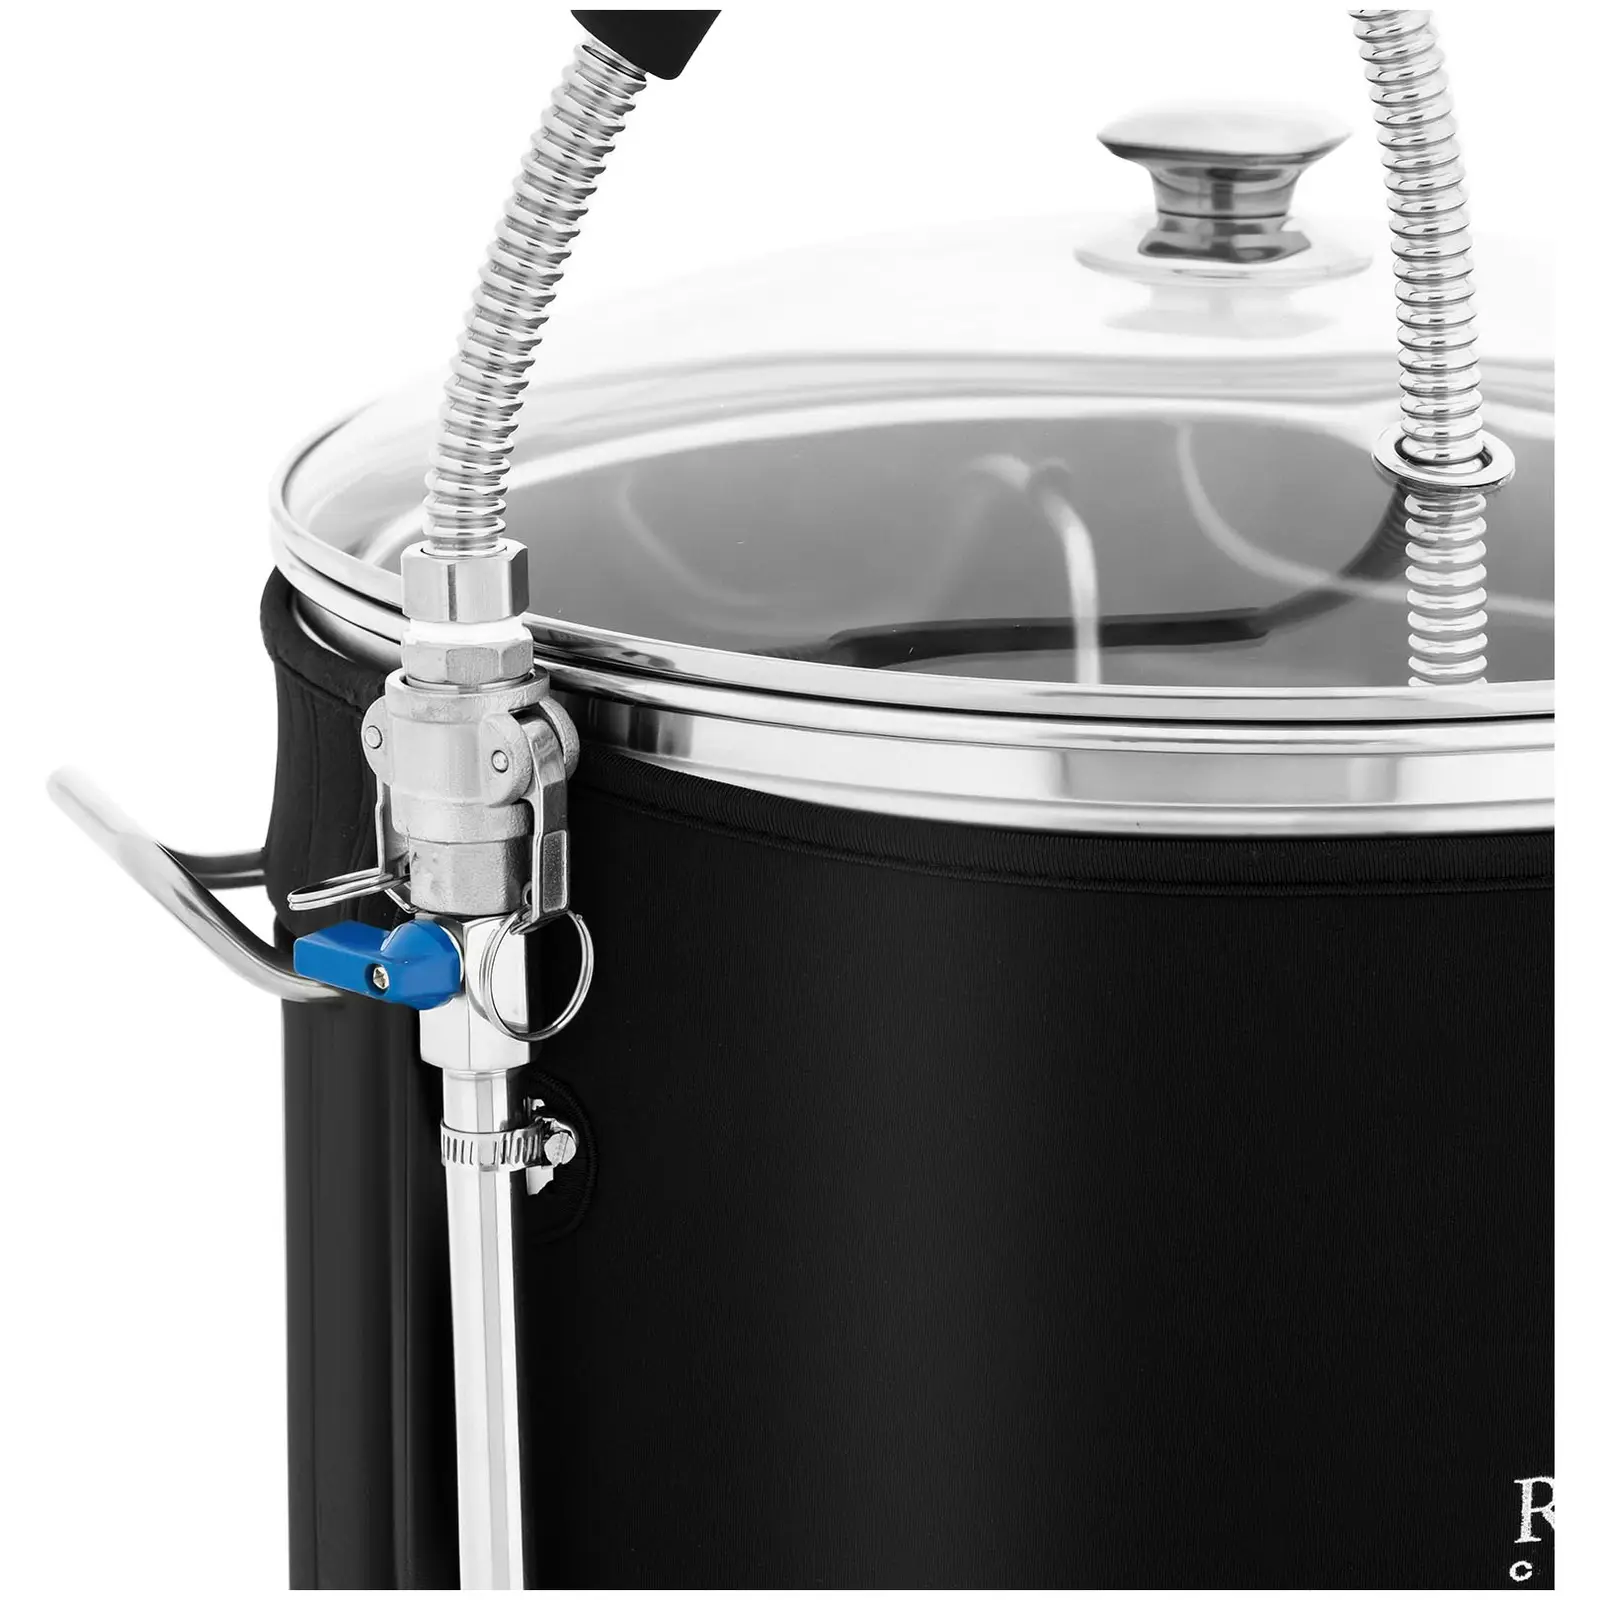 Fermentatore per birra con isolamento - 60 L - 3000 W - 10 - 100 °C - Acciaio inox - Schermo LCD - TImer